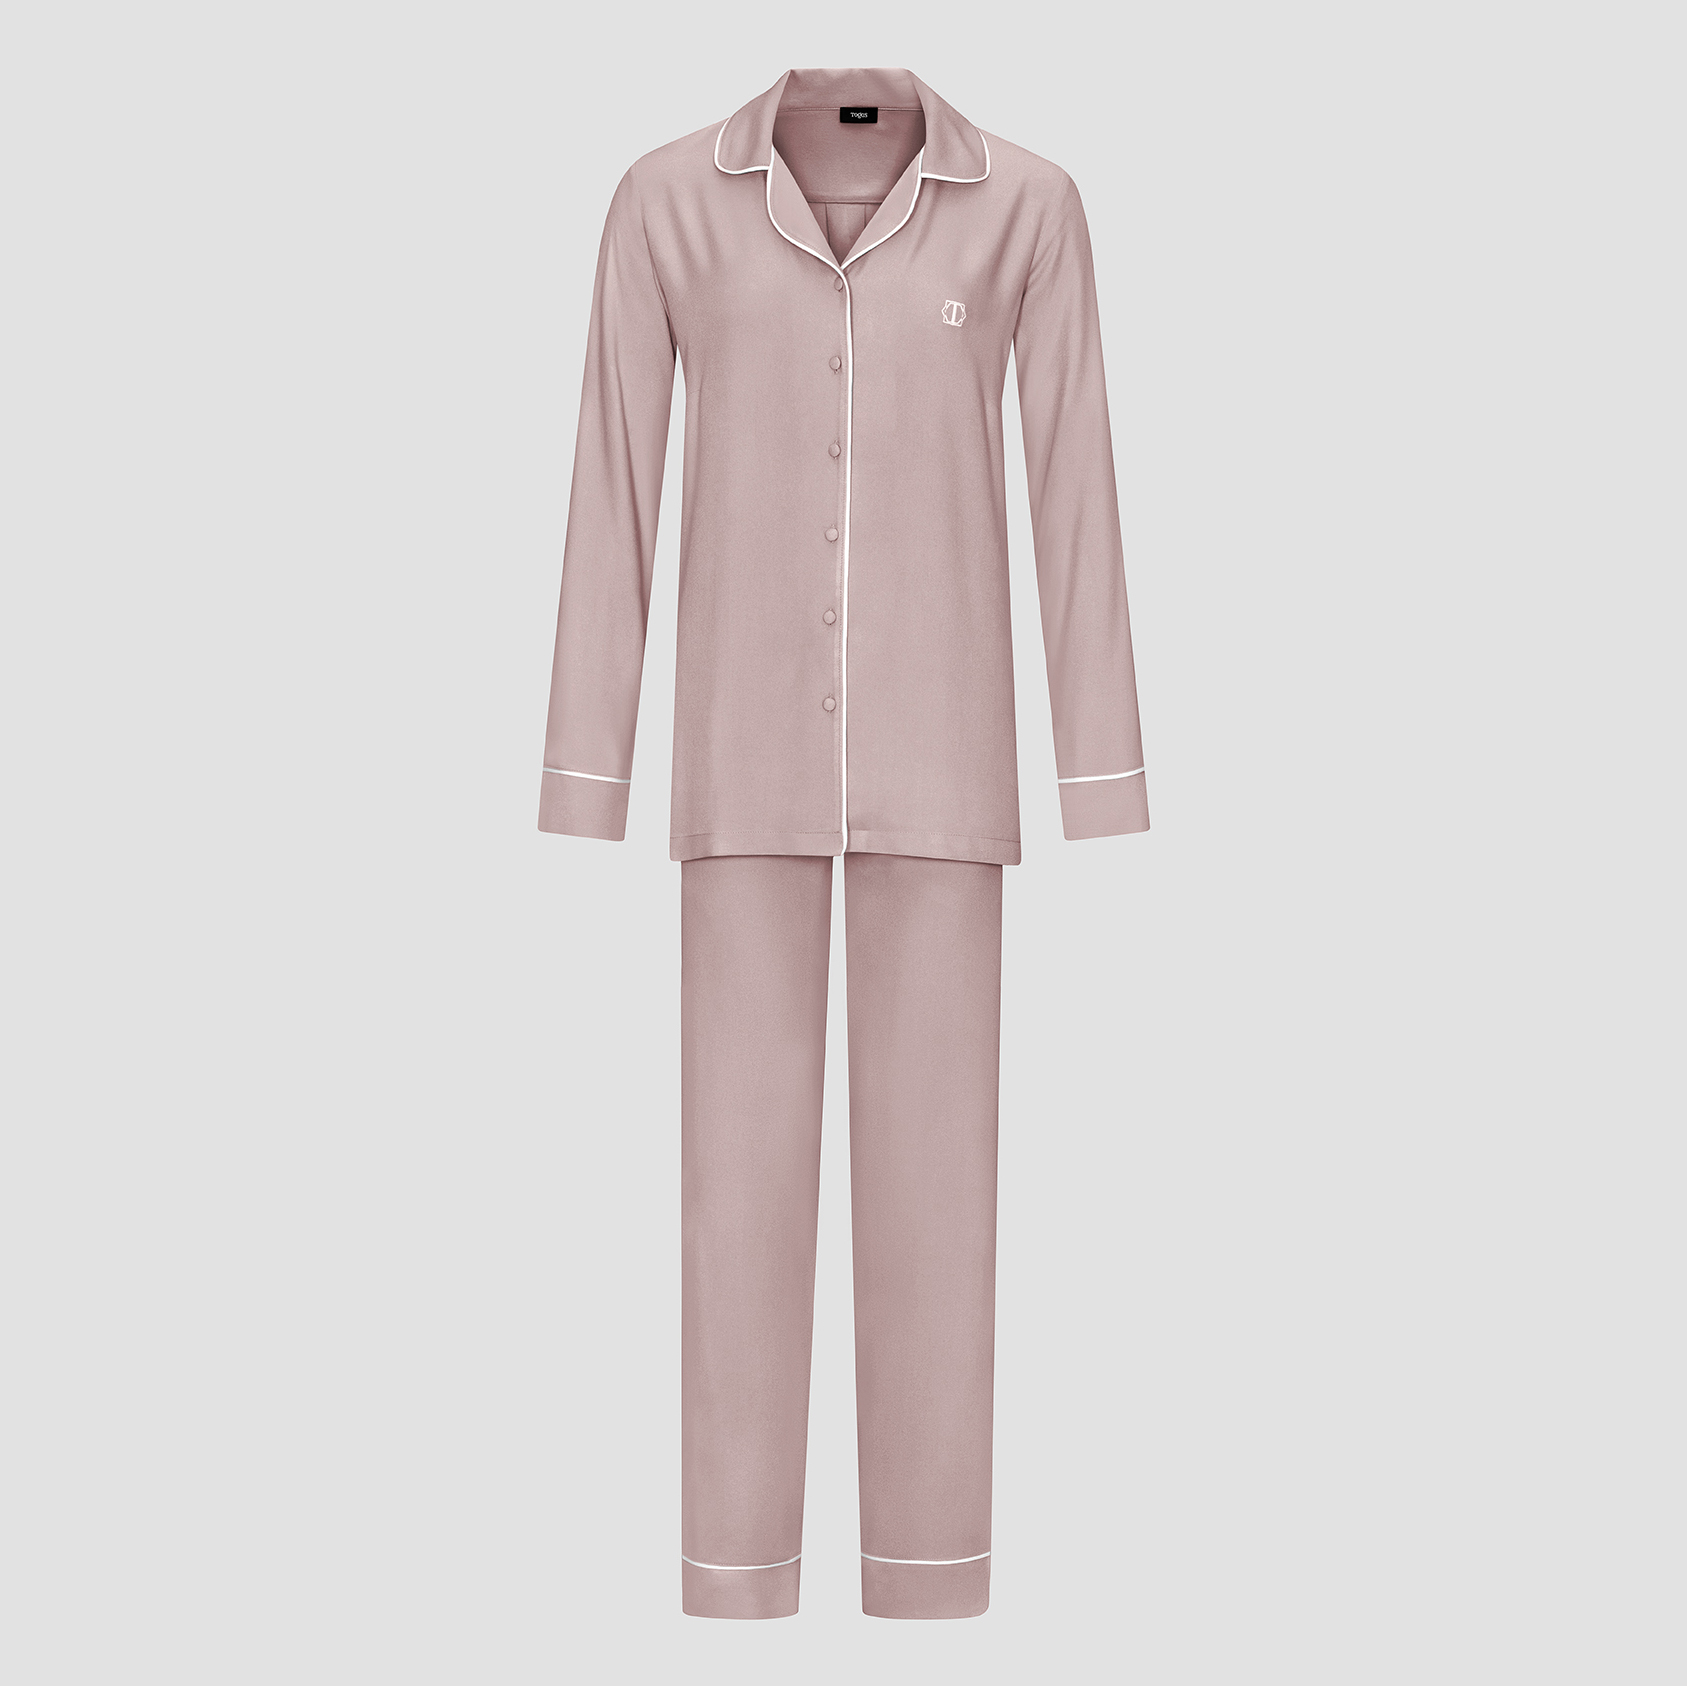 Пижама женская Togas Рамель розовая 2 предмета пижама рубашка шорты